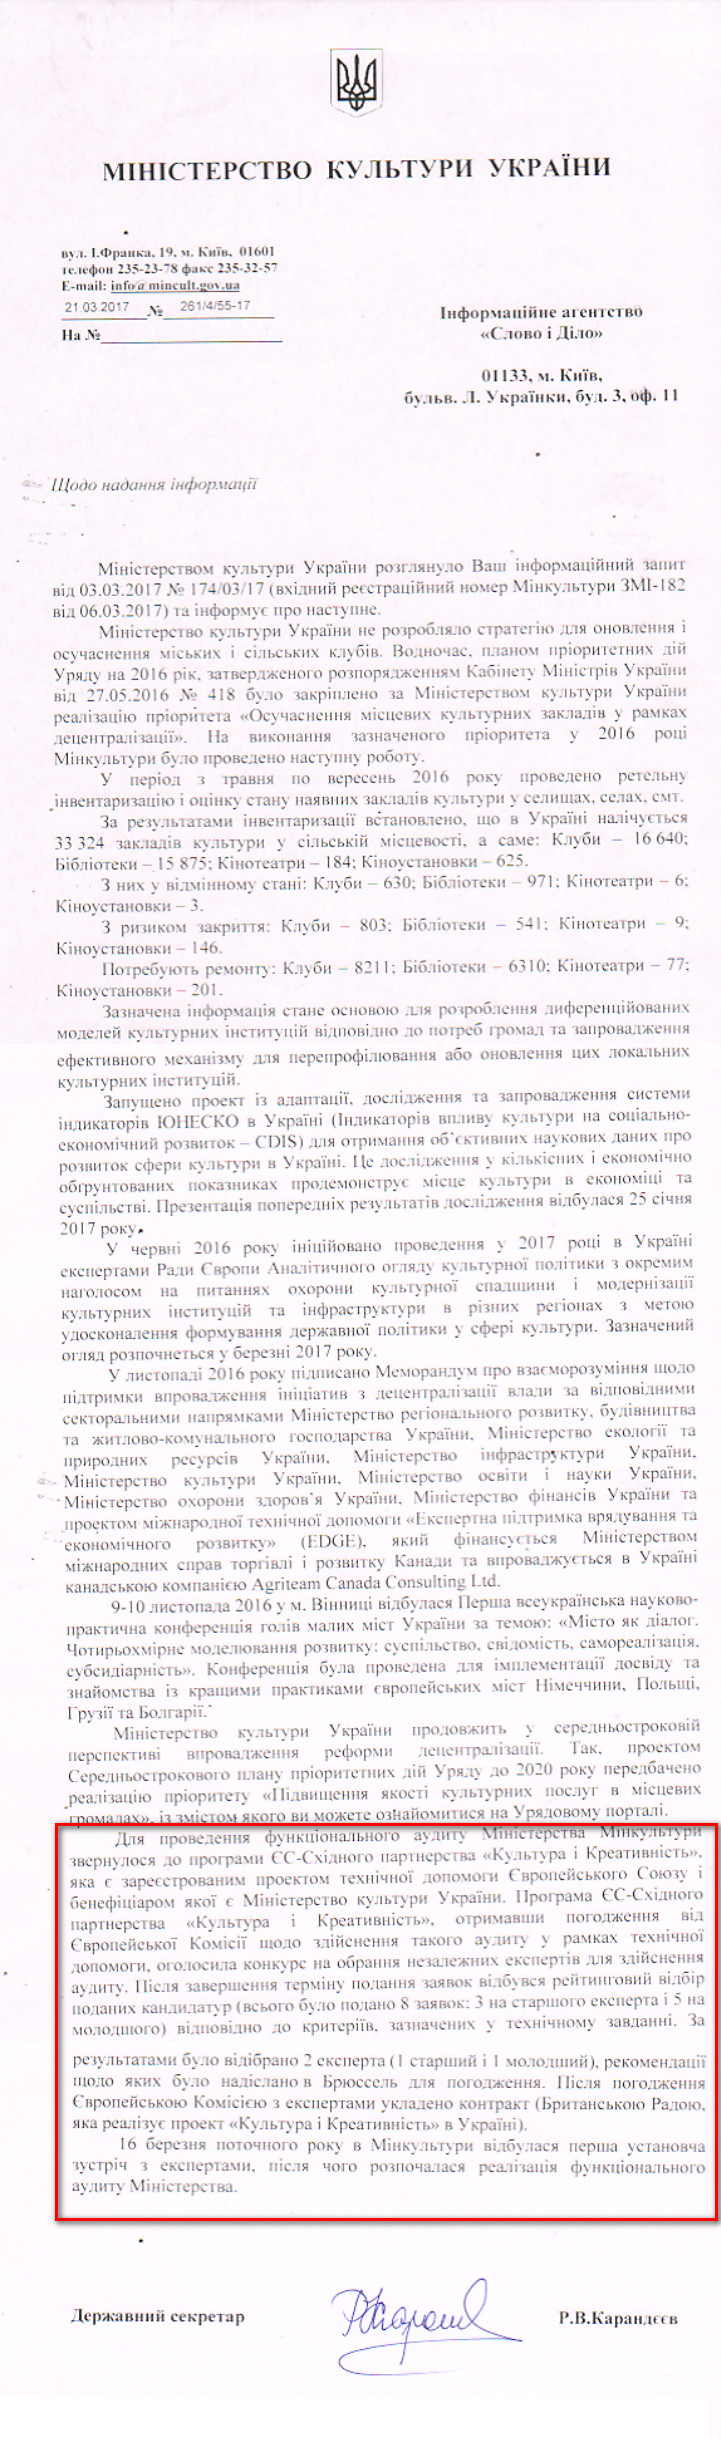 Лист Міністерства культури України від 21 березня 2017 року